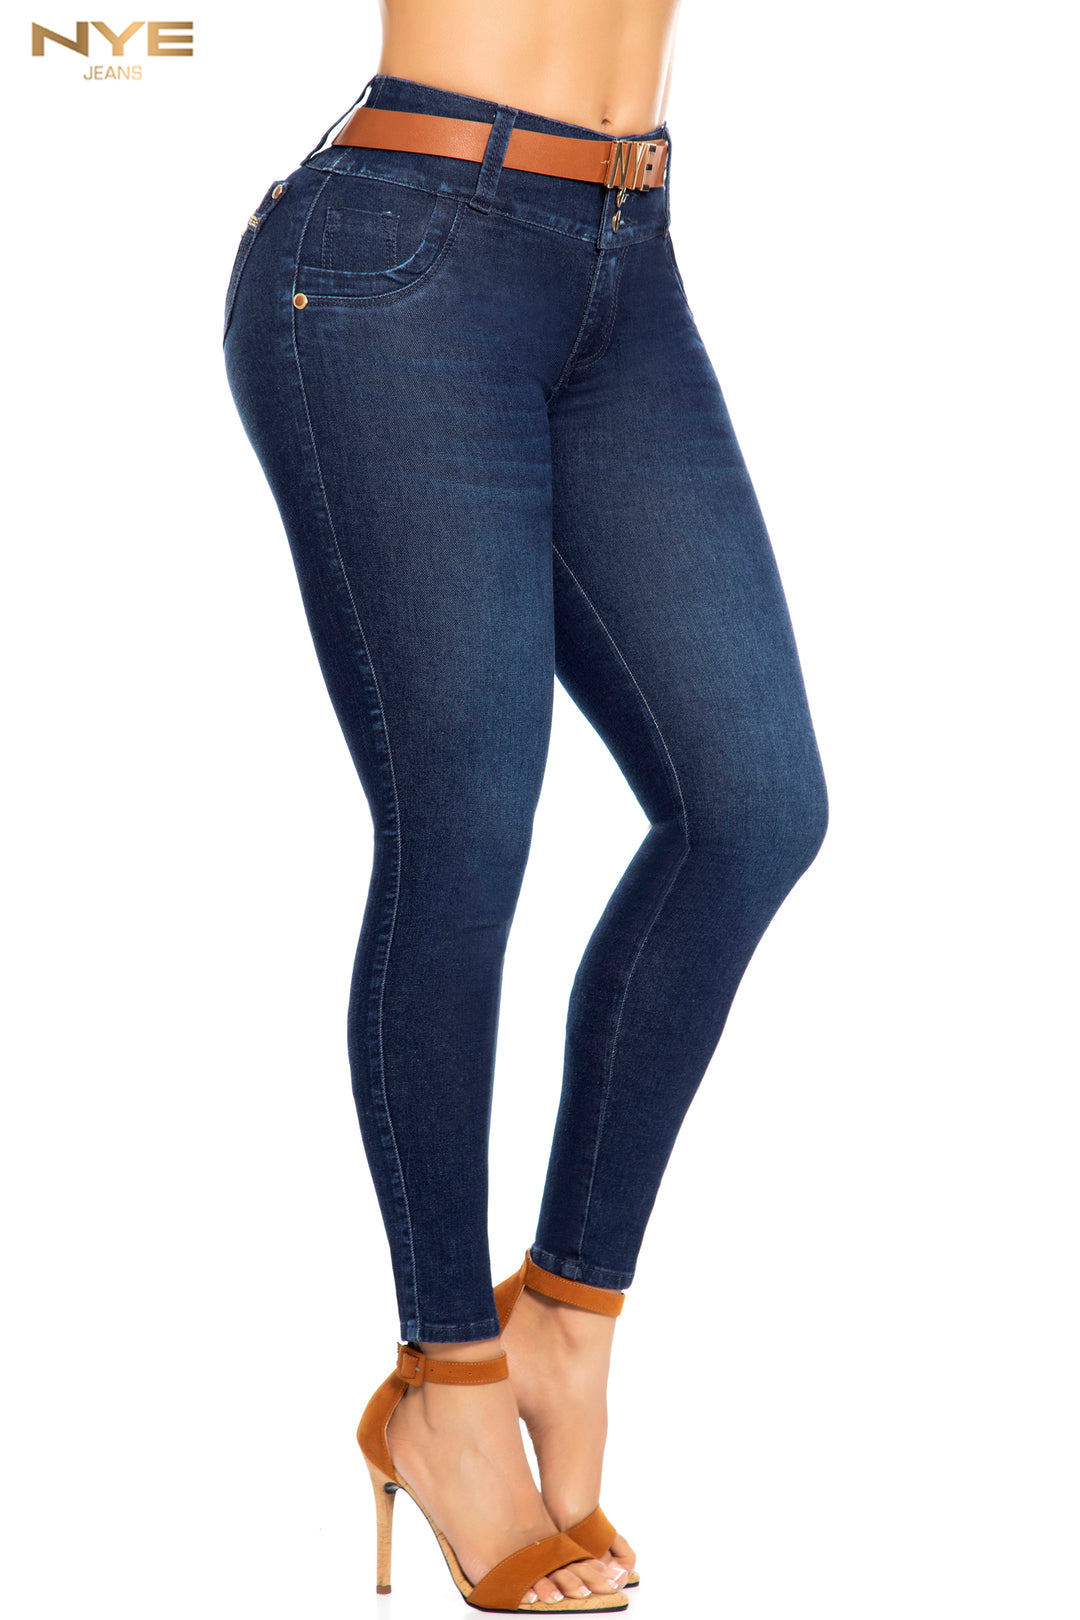 El Vaquero Push Up Ref 64049 es un clásico pantalón azul que cuenta con bolsillos traseros y una pretina anatómica de tres botones. Ofrece un ajuste perfecto y realza la figura. Ideal para un look casual pero elegante. ¡Siéntete cómodo y con estilo con este pantalón!